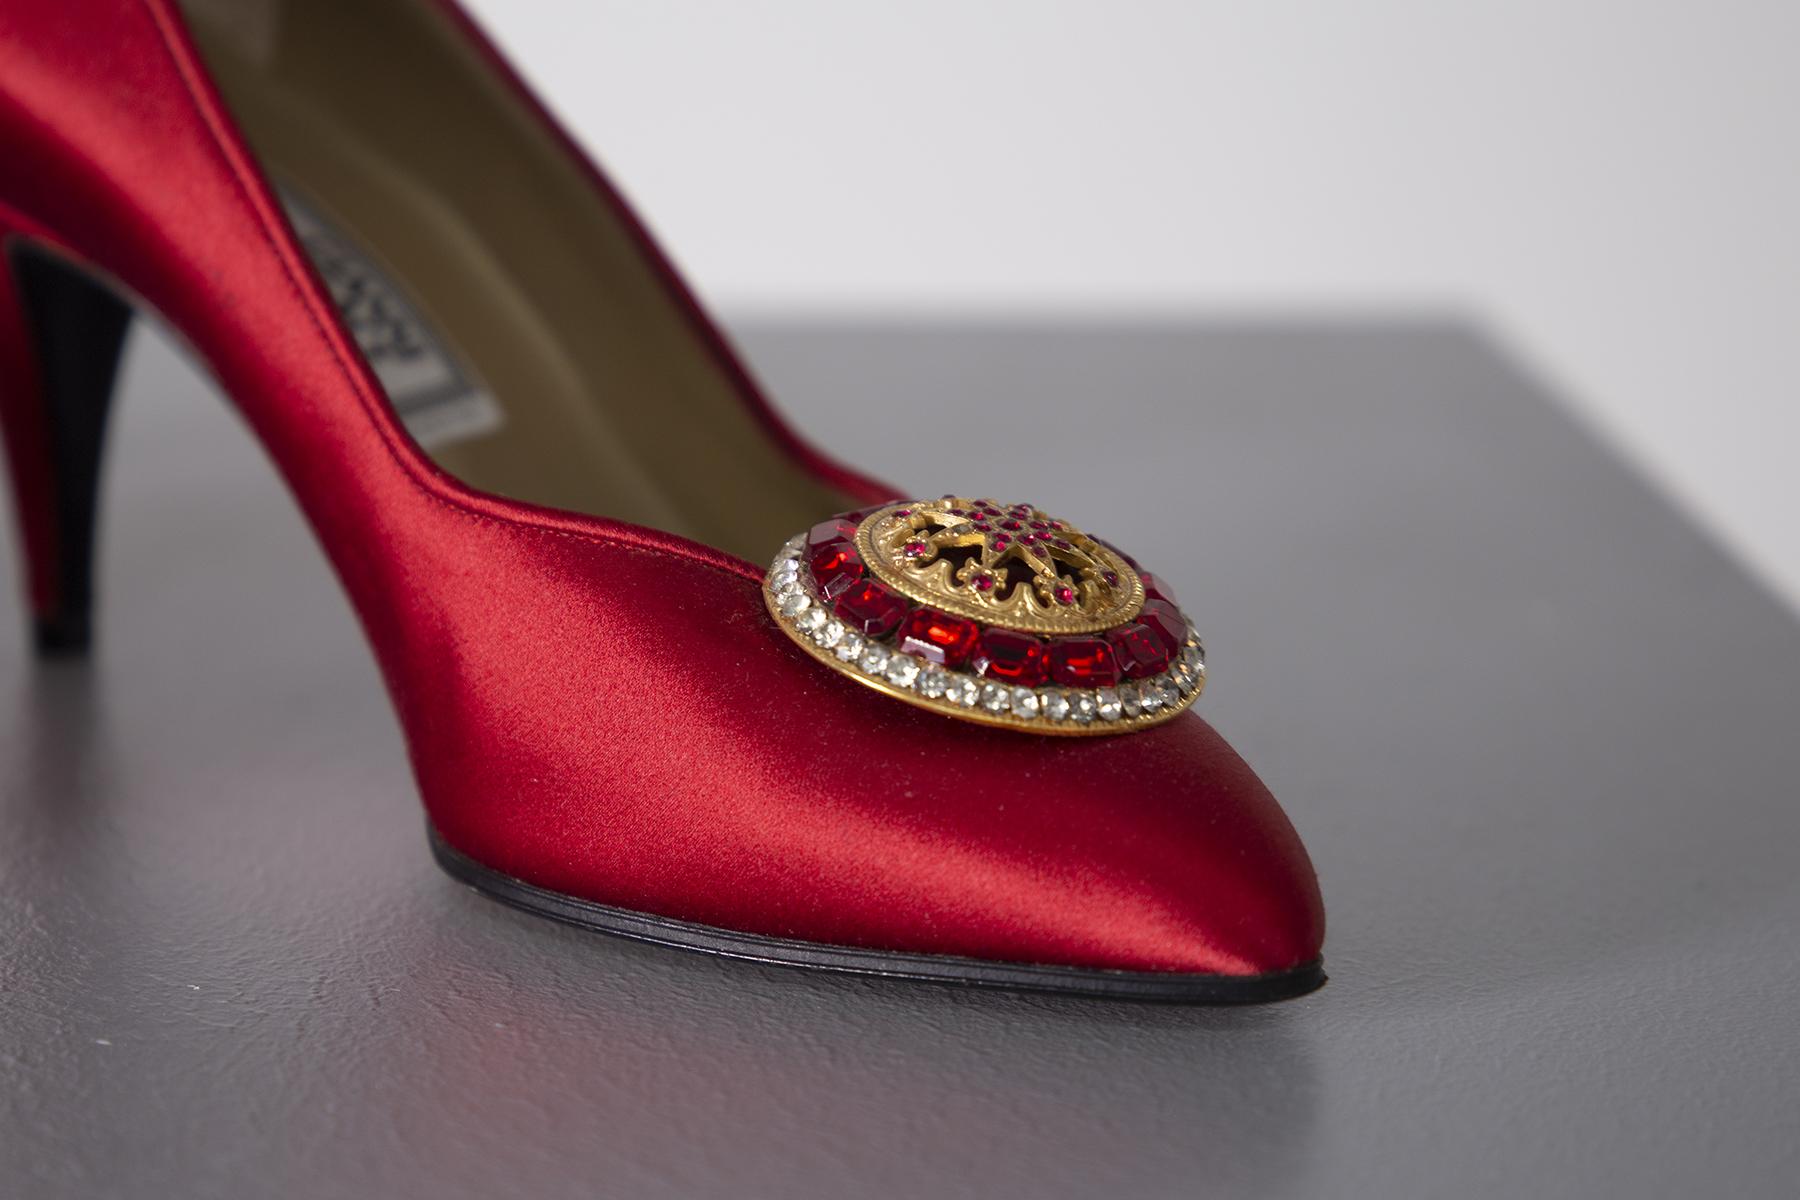 Superbe paire de décolletés Gianni Versace des années 90. Conçu de manière exceptionnelle, il est merveilleusement détaillé. L'étiquette de Gianni Versace à l'intérieur de la chaussure. Le talon mesure 7 cm. Les chaussures sont en tissu satiné